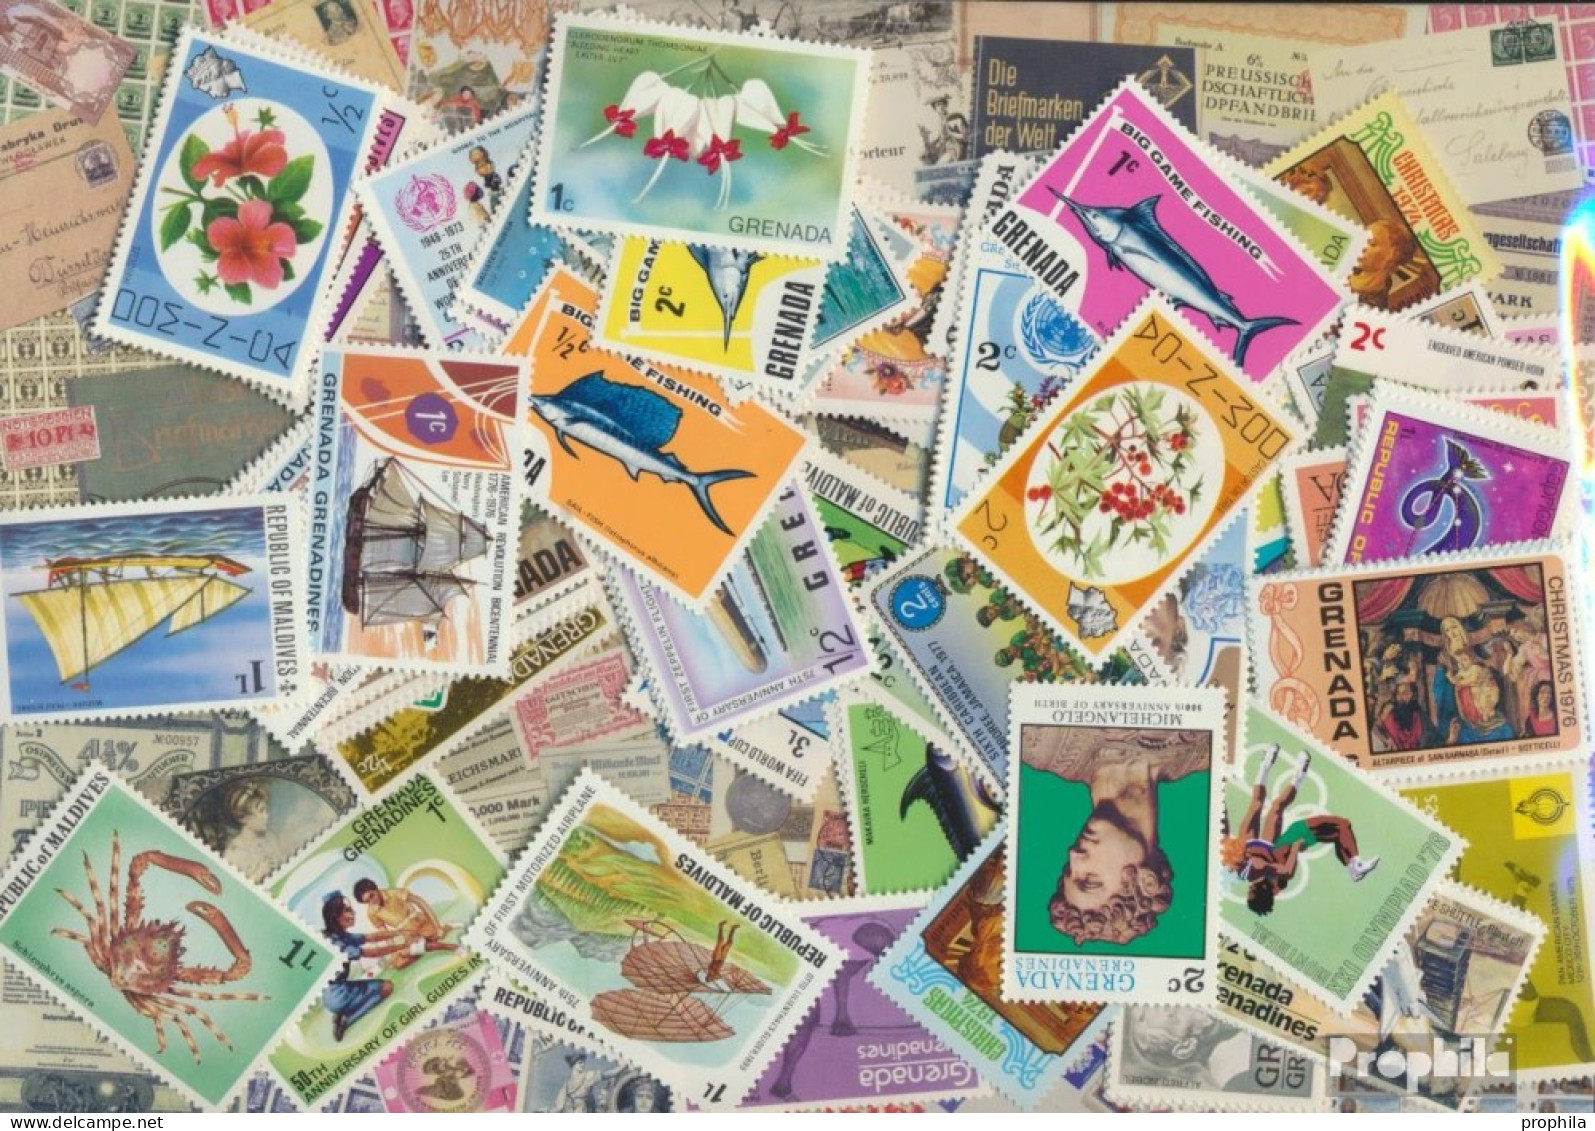 Großbritannien 100 Verschiedene Marken Postfrisch Britische Kolonien Und Empire - Collections